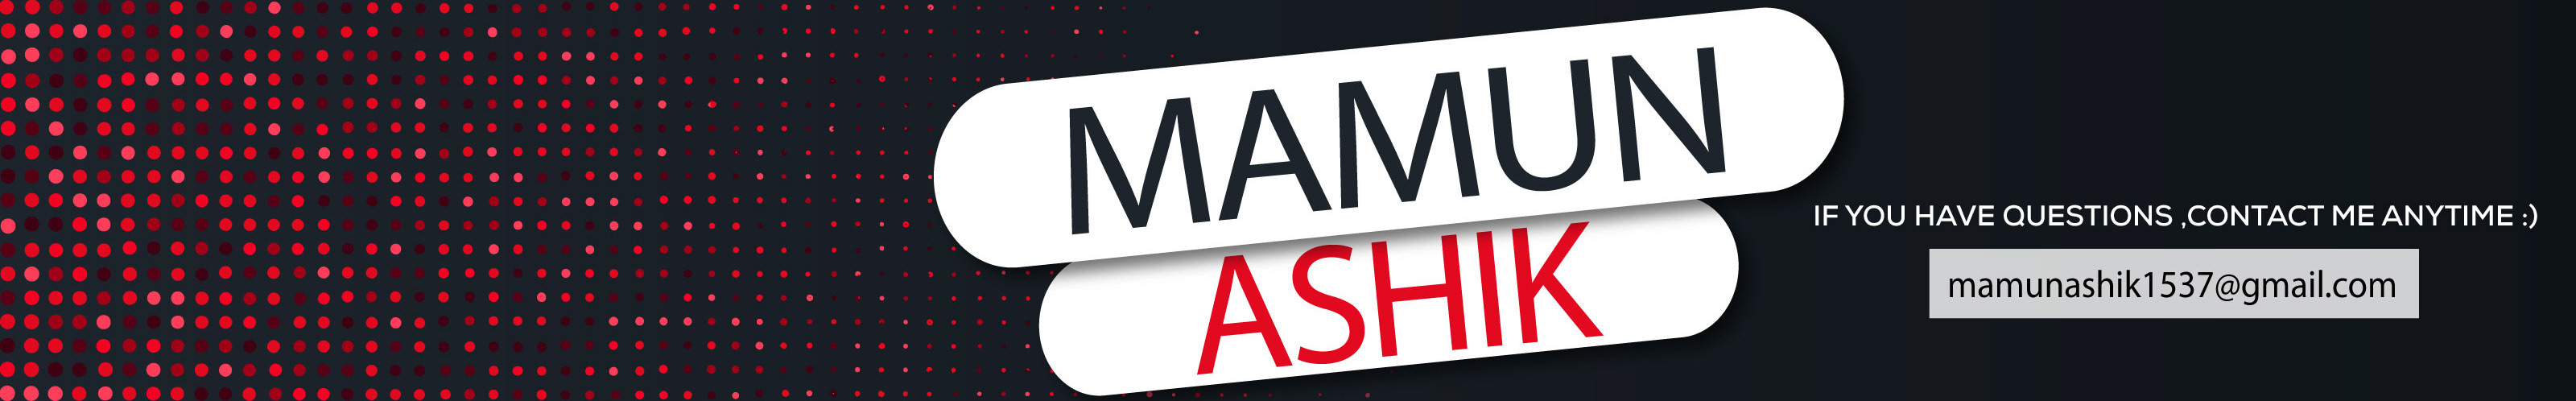 Mamun ashik's profile banner